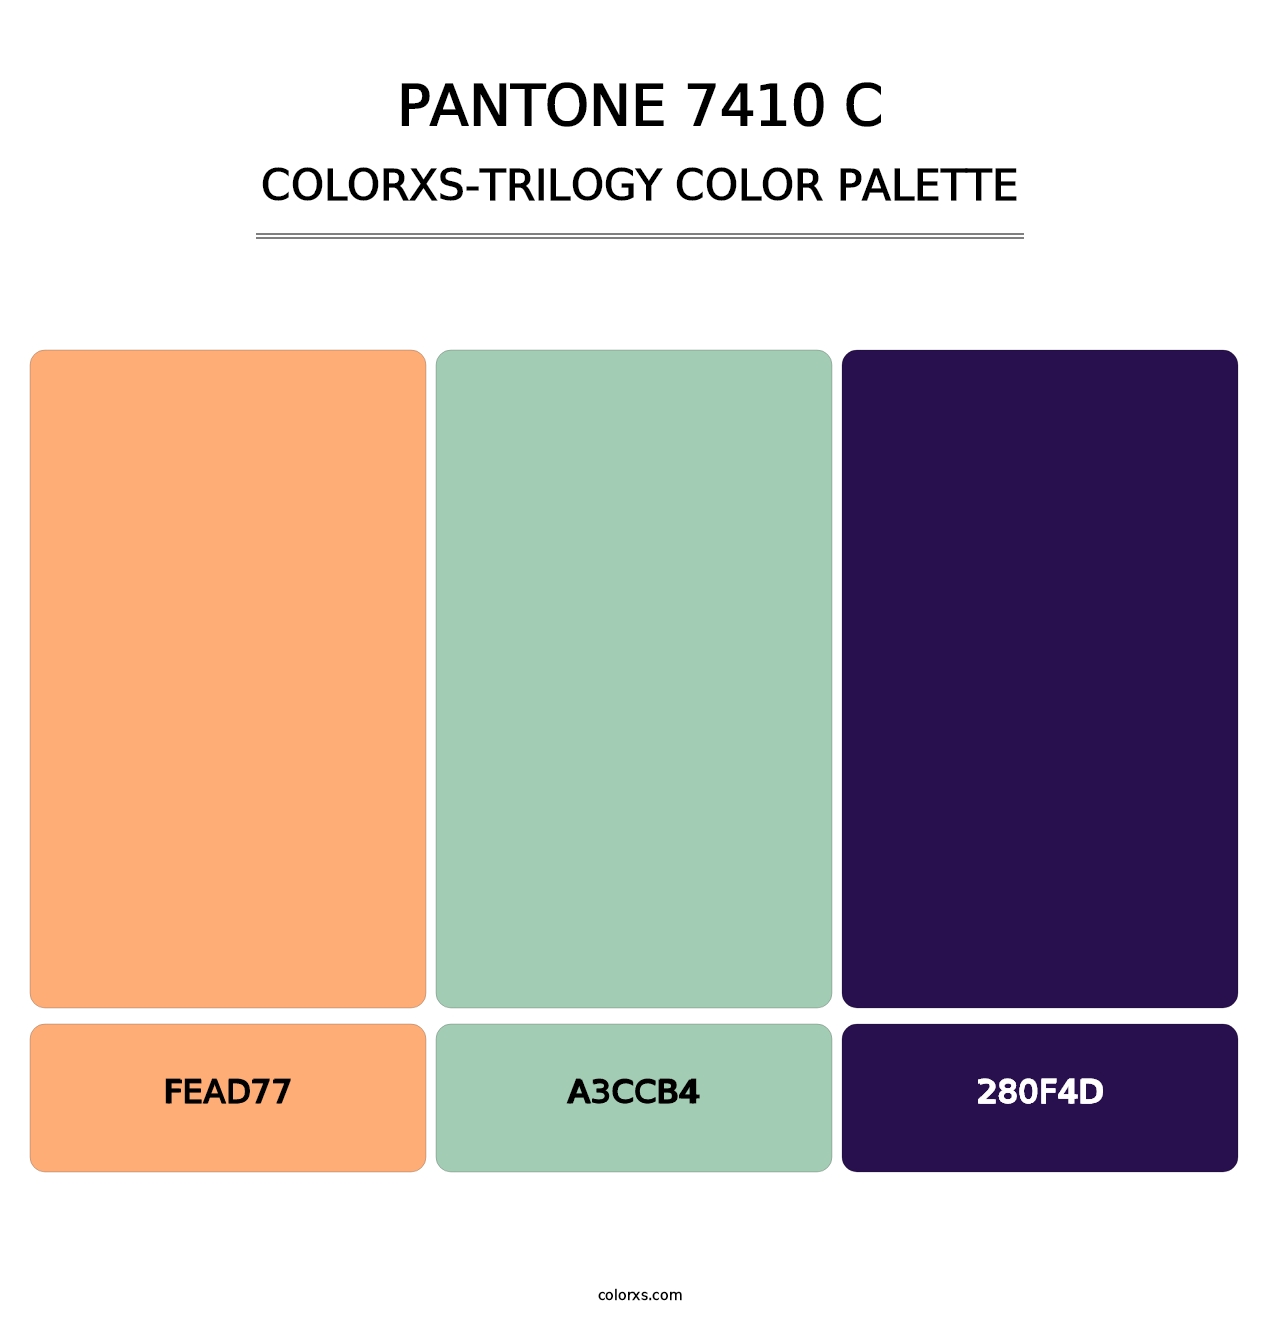 PANTONE 7410 C - Colorxs Trilogy Palette